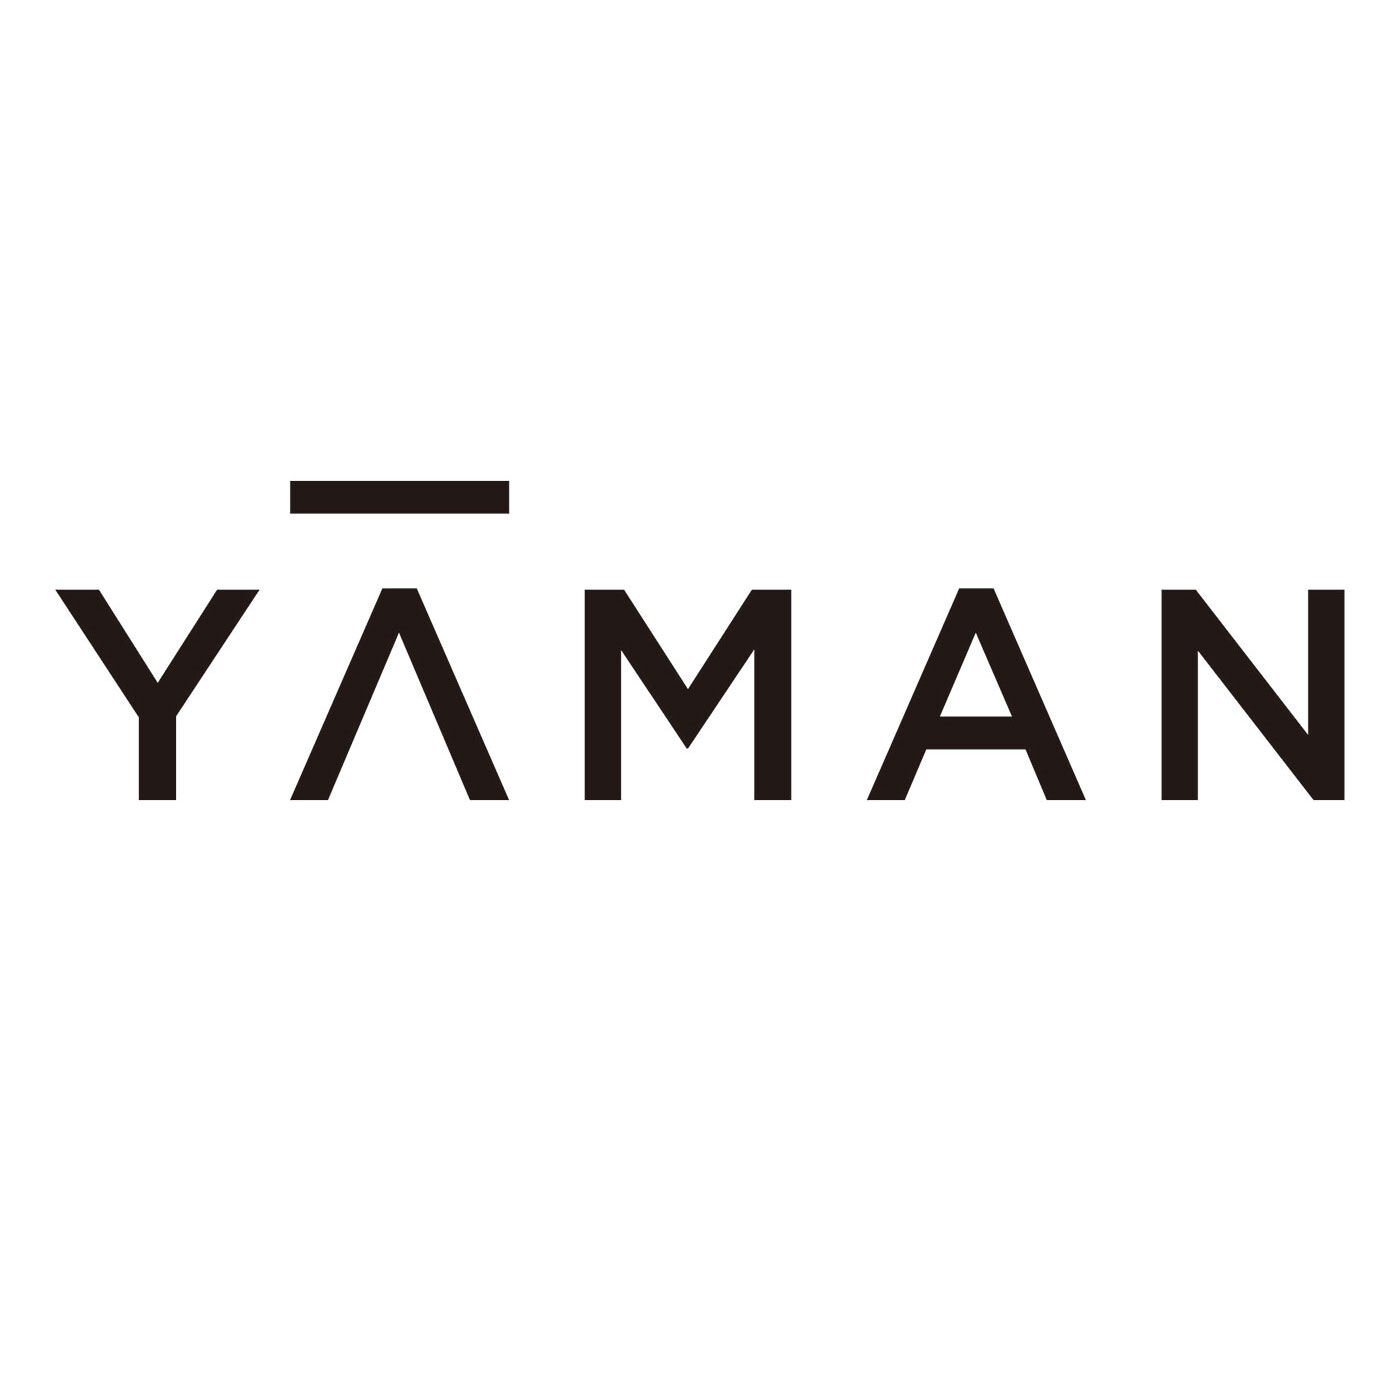 BEAUTY PROJECT レンタル|【レンタル3ヵ月コース】おうちエステで光脱毛 ヤーマン レイボーテGO〈顔・からだ用〉|[YA-MAN TOKYO JAPAN]精密機器、業務用美容機器を開発してきた美容専業メーカーとして、先端テクノロジーと常識を超えたアイデアを駆使して、お客様へ新たな美を創造する YA-MAN TOKYO JAPAN